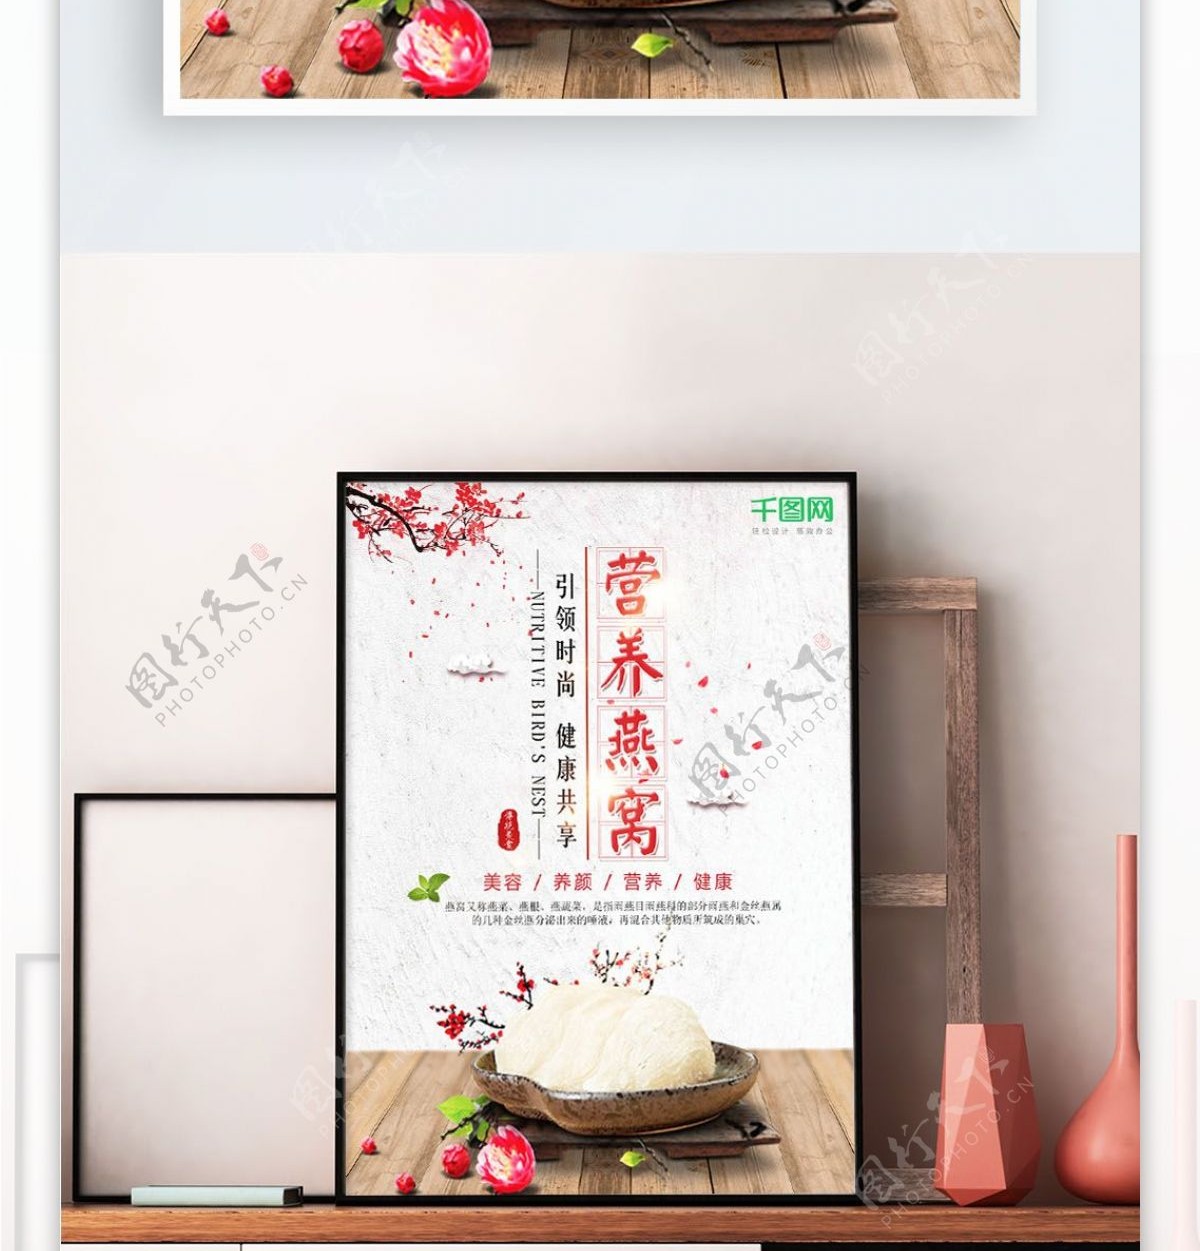 简约中国风燕窝养生滋补食疗海报设计